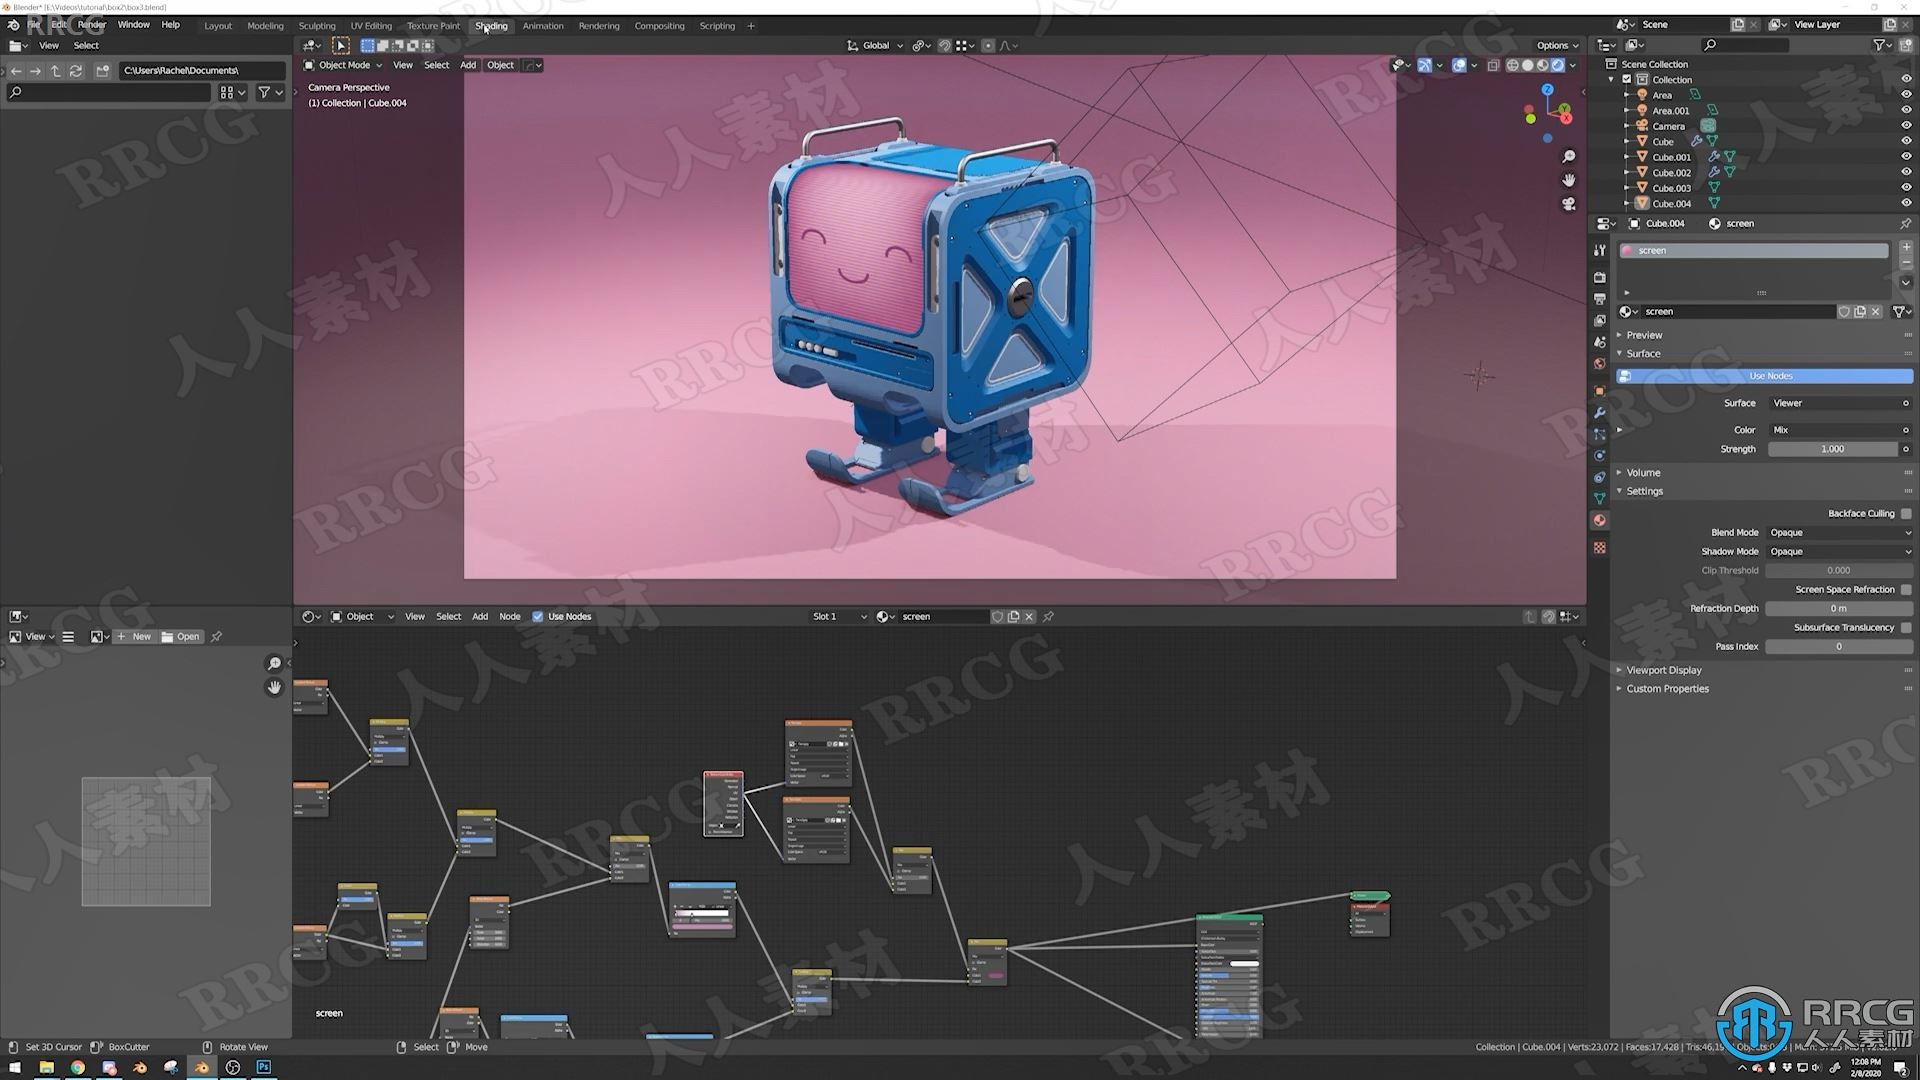 Blender可爱小盒子机器人实例制作视频教程